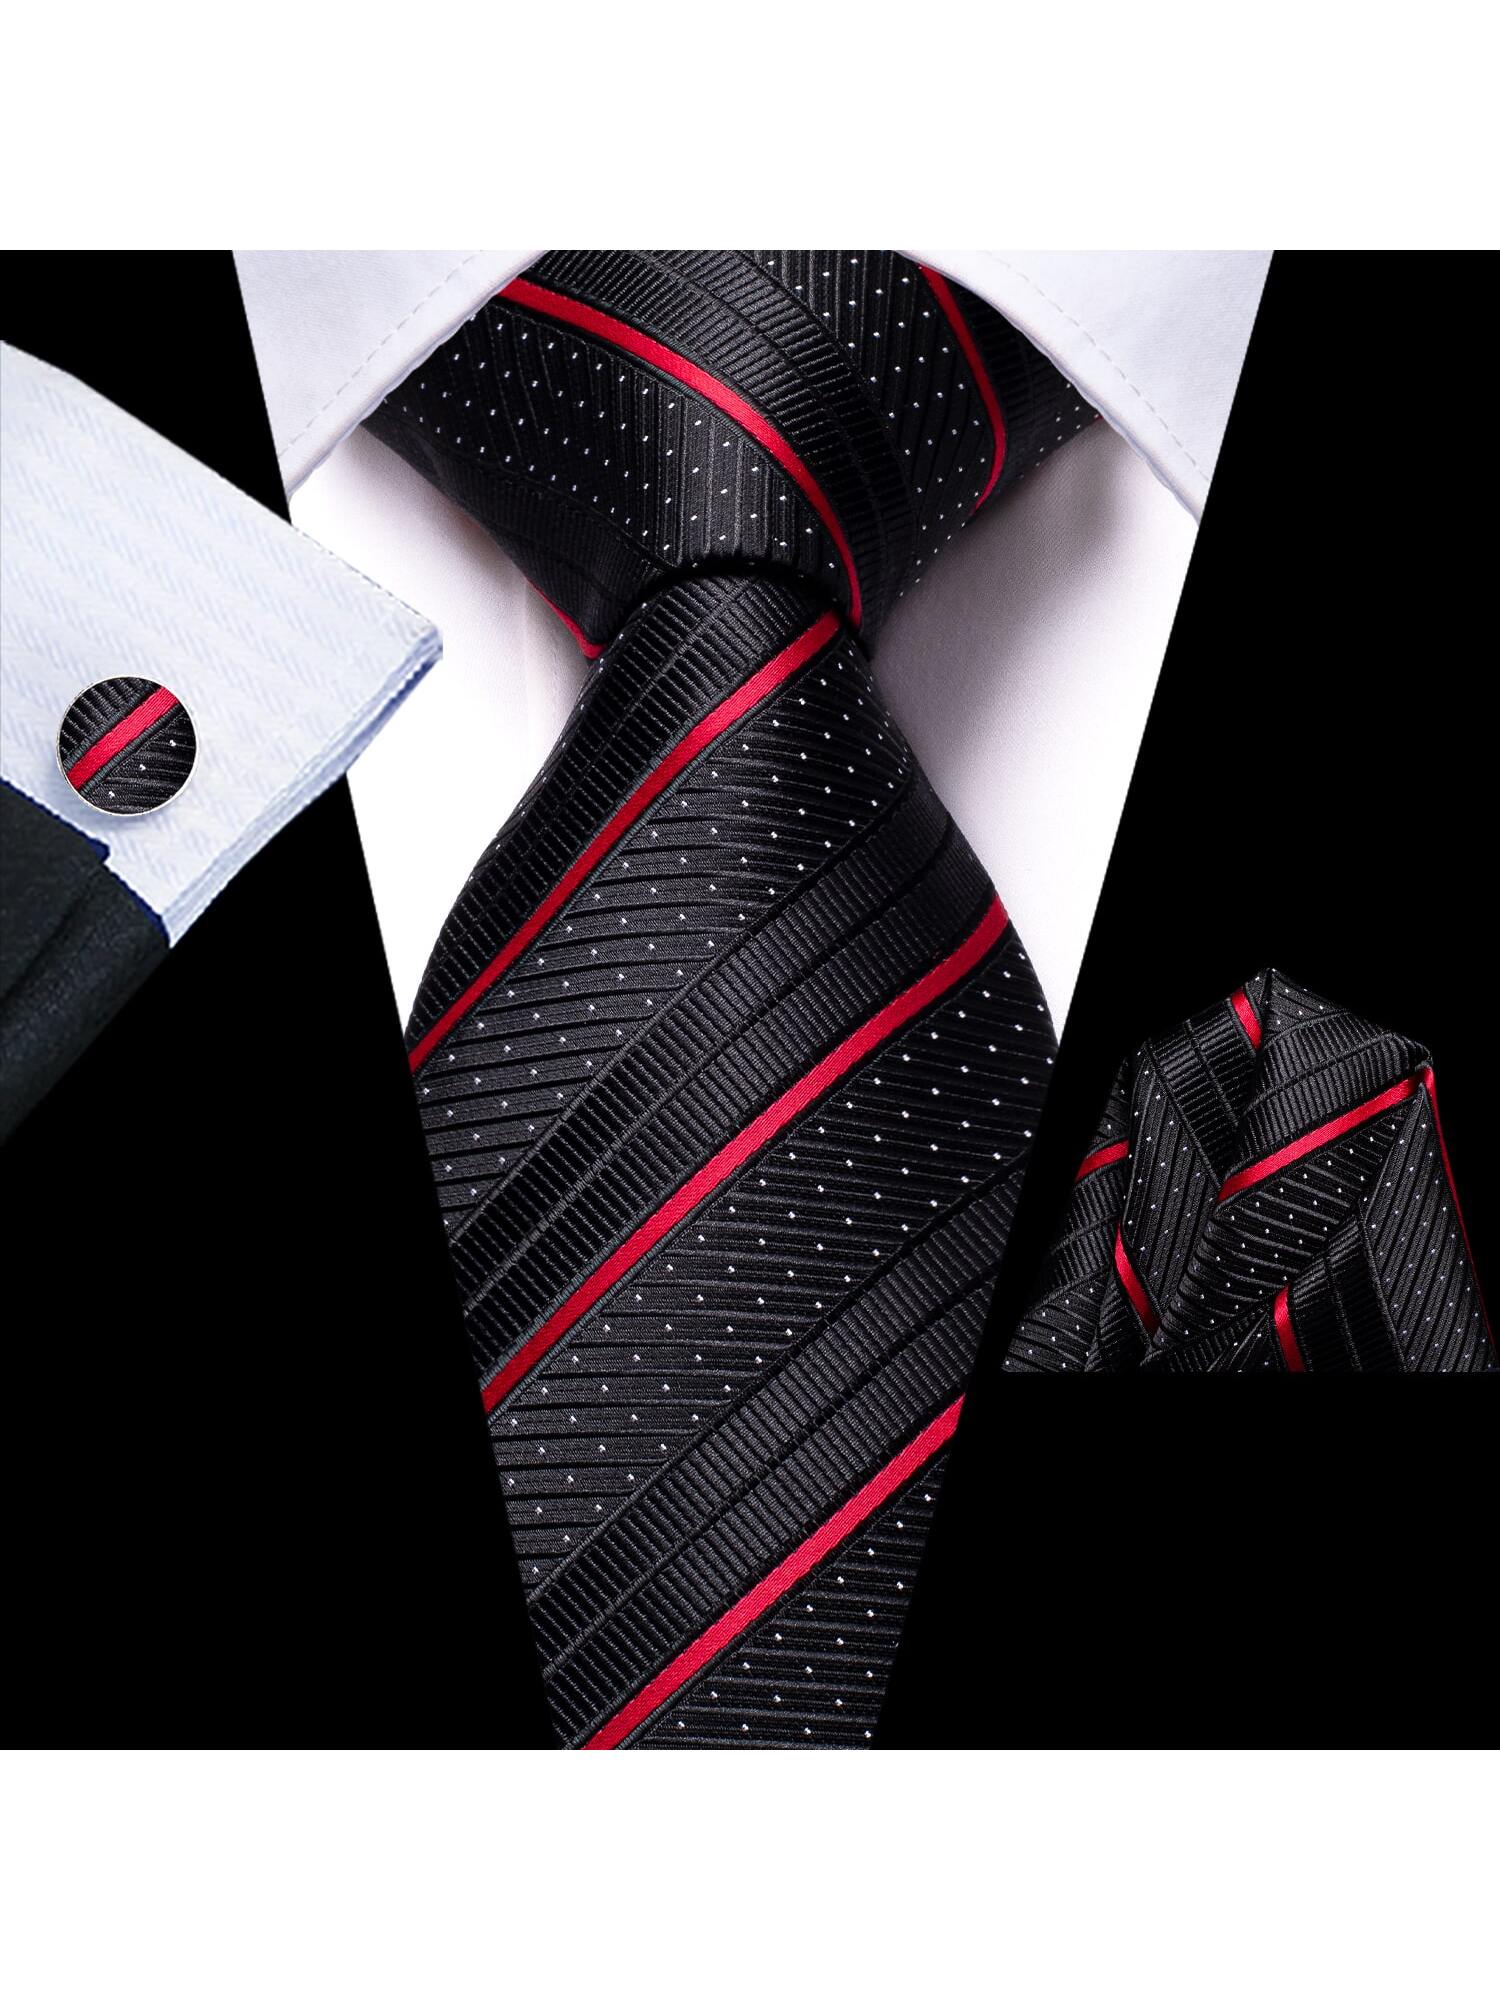 dibangu мужской галстук шелковый красный синий однотонный свадебный галстук карманные квадратные запонки зажим набор пейсли желтый Шелковый мужской галстук Hi-Tie, черный